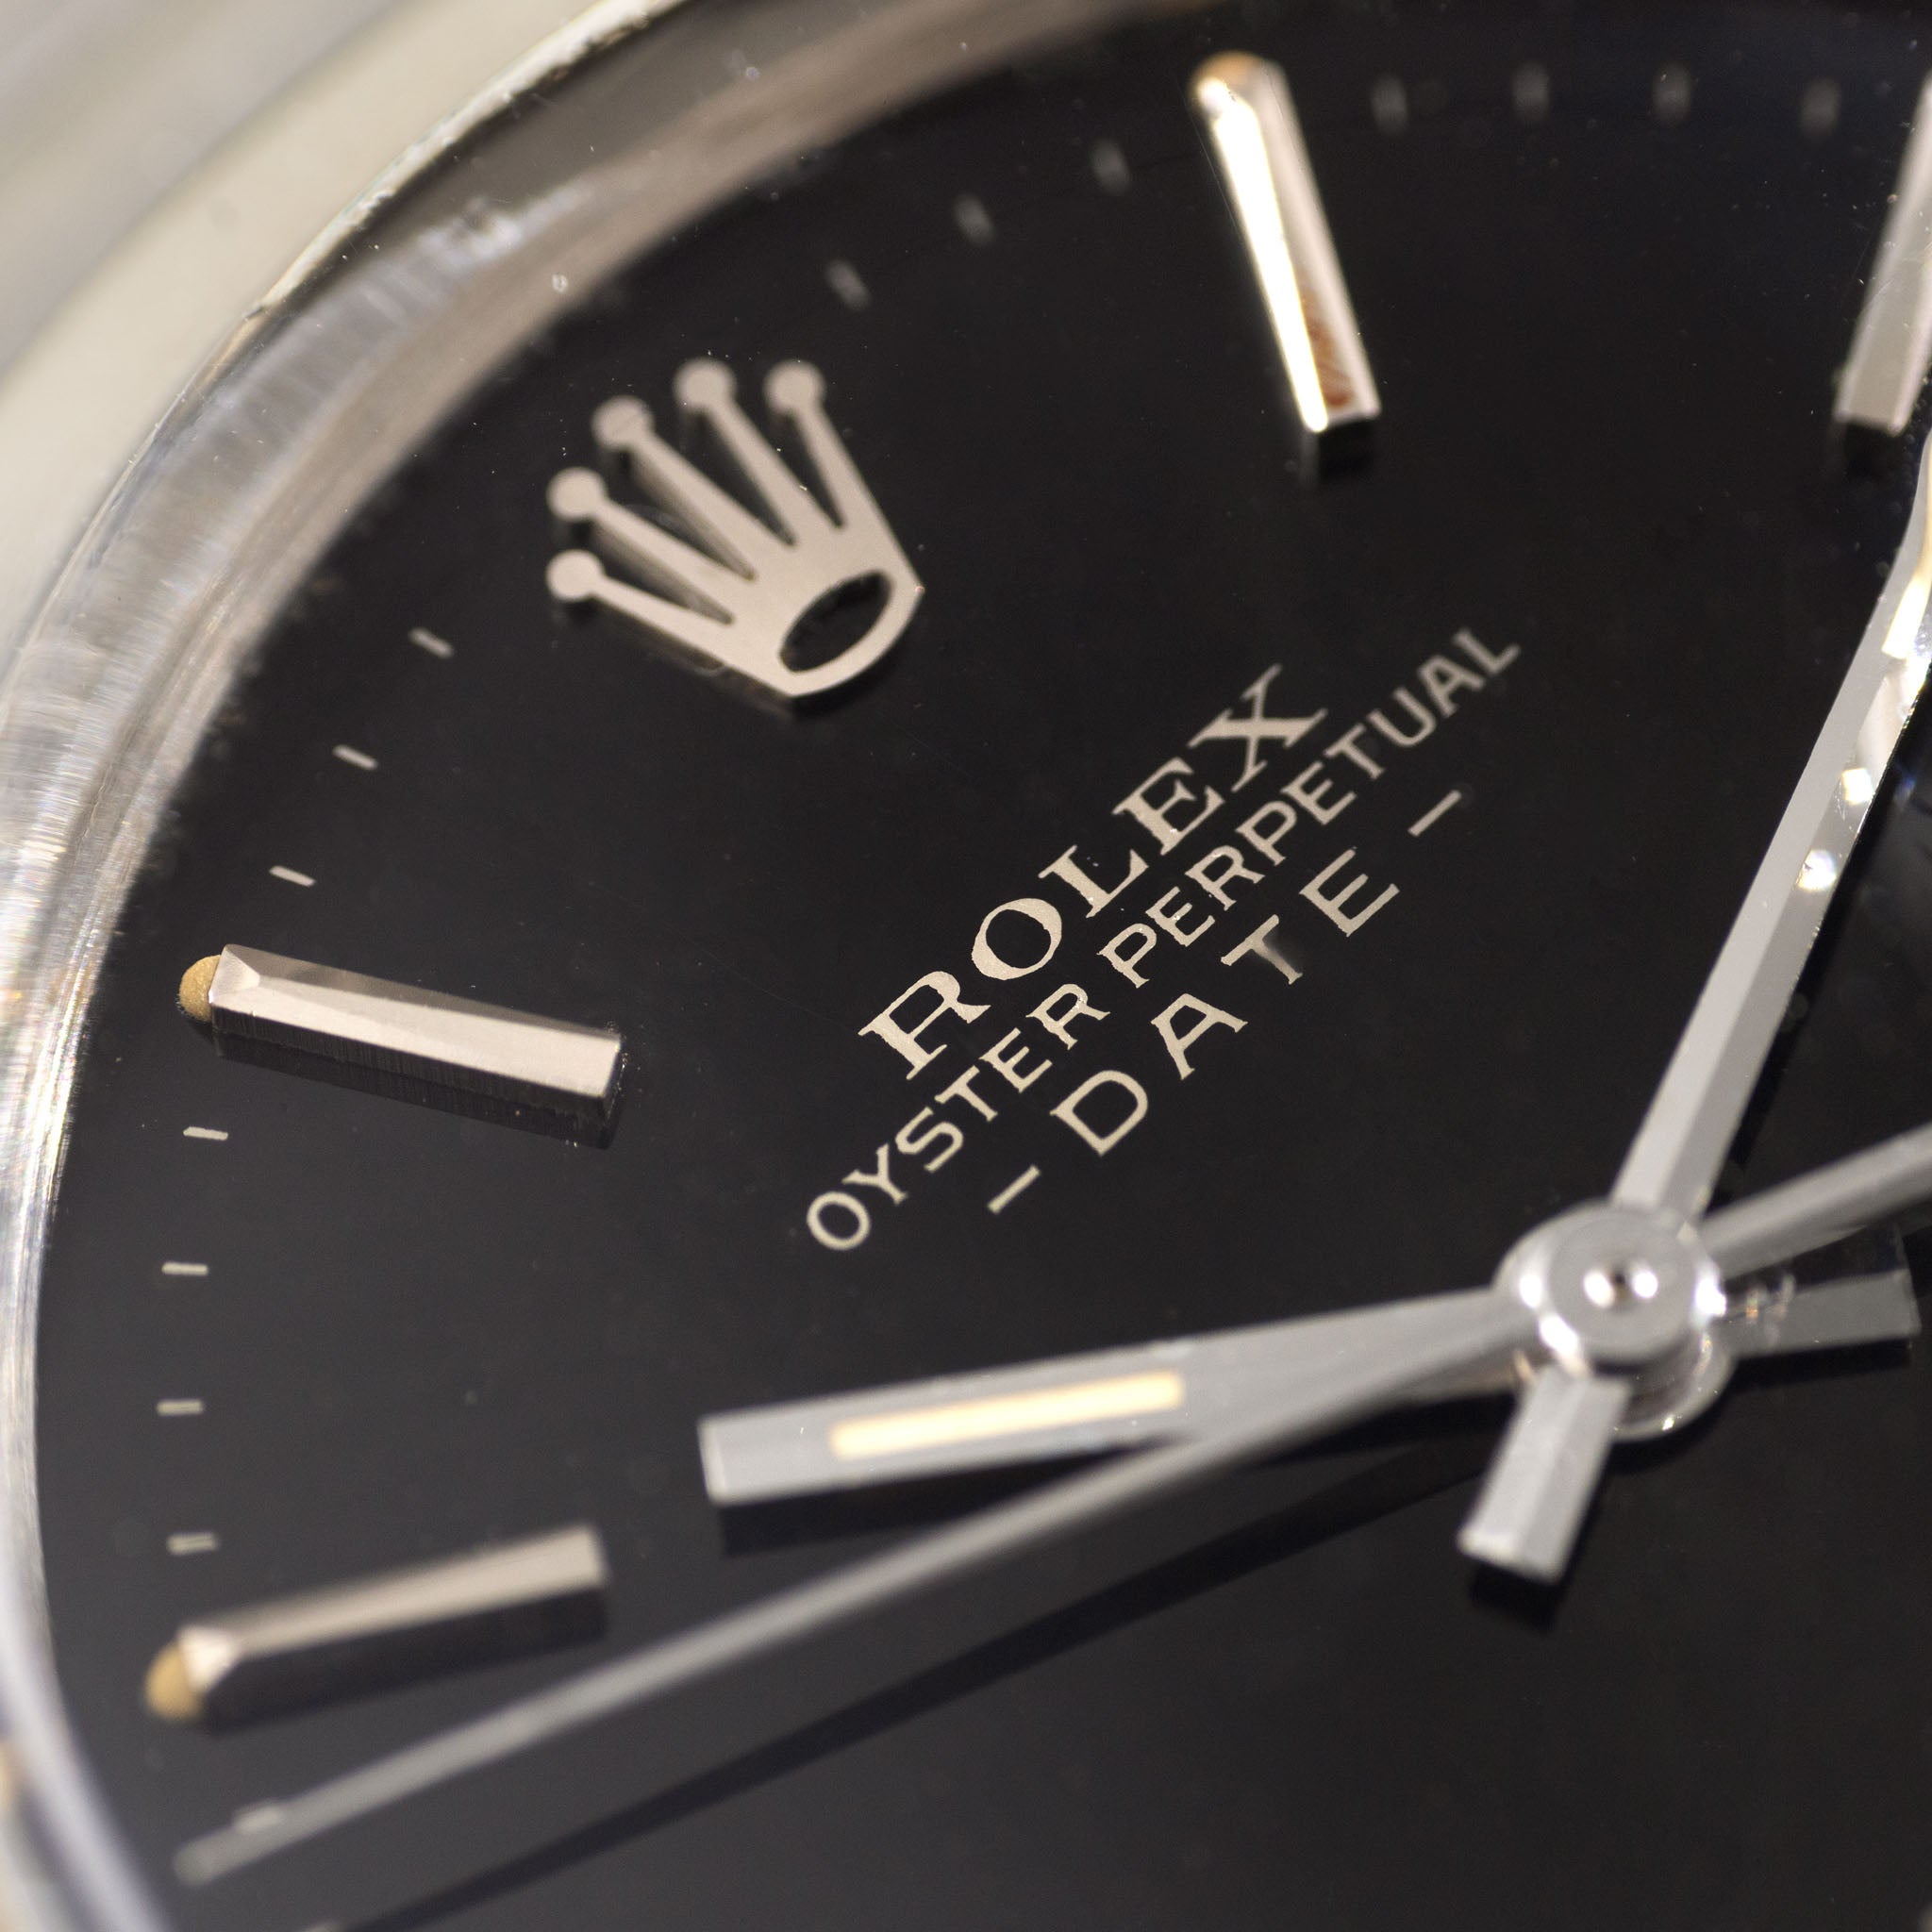 Rolex Oyster Perpetual Date Schwarzes Zifferblatt mit silbernem Aufdruck "Upside Down" Referenz 1500